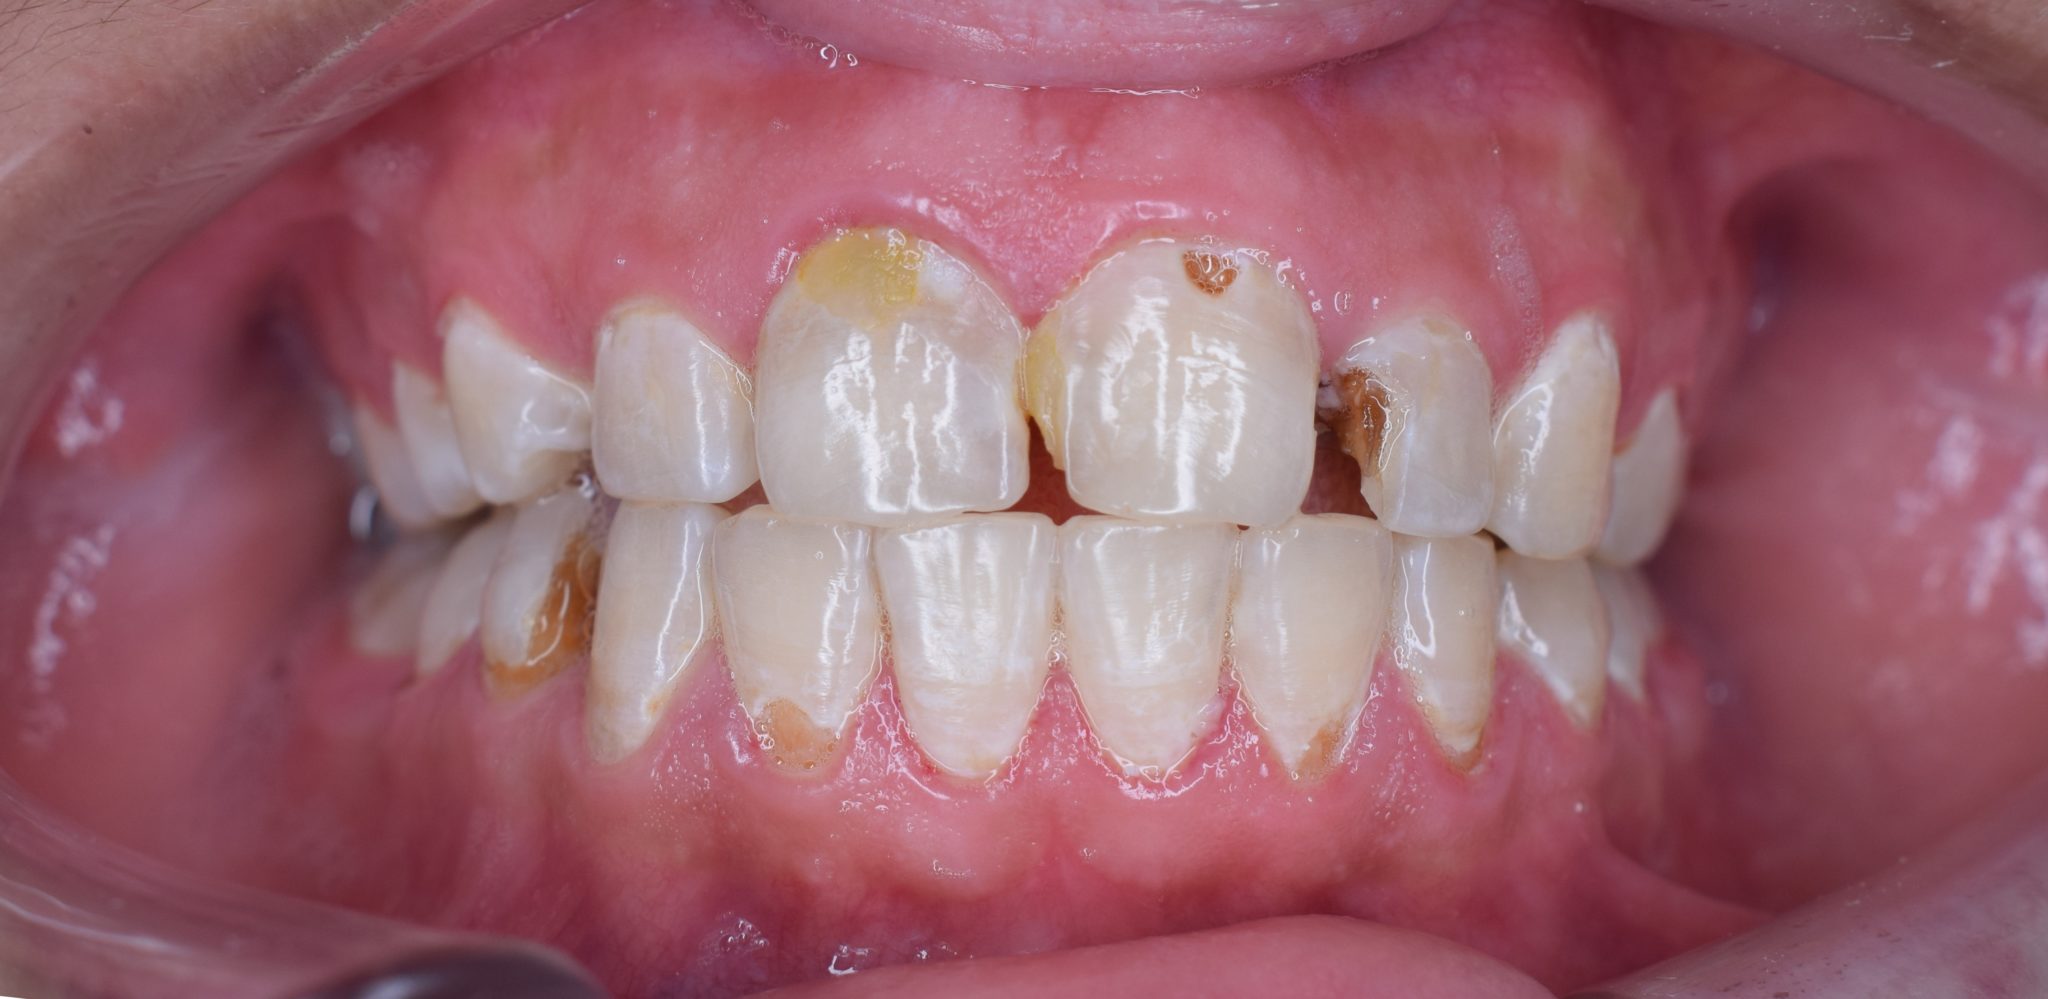 Les Origines Des Caries Dentaires Acg2016 Odontologie